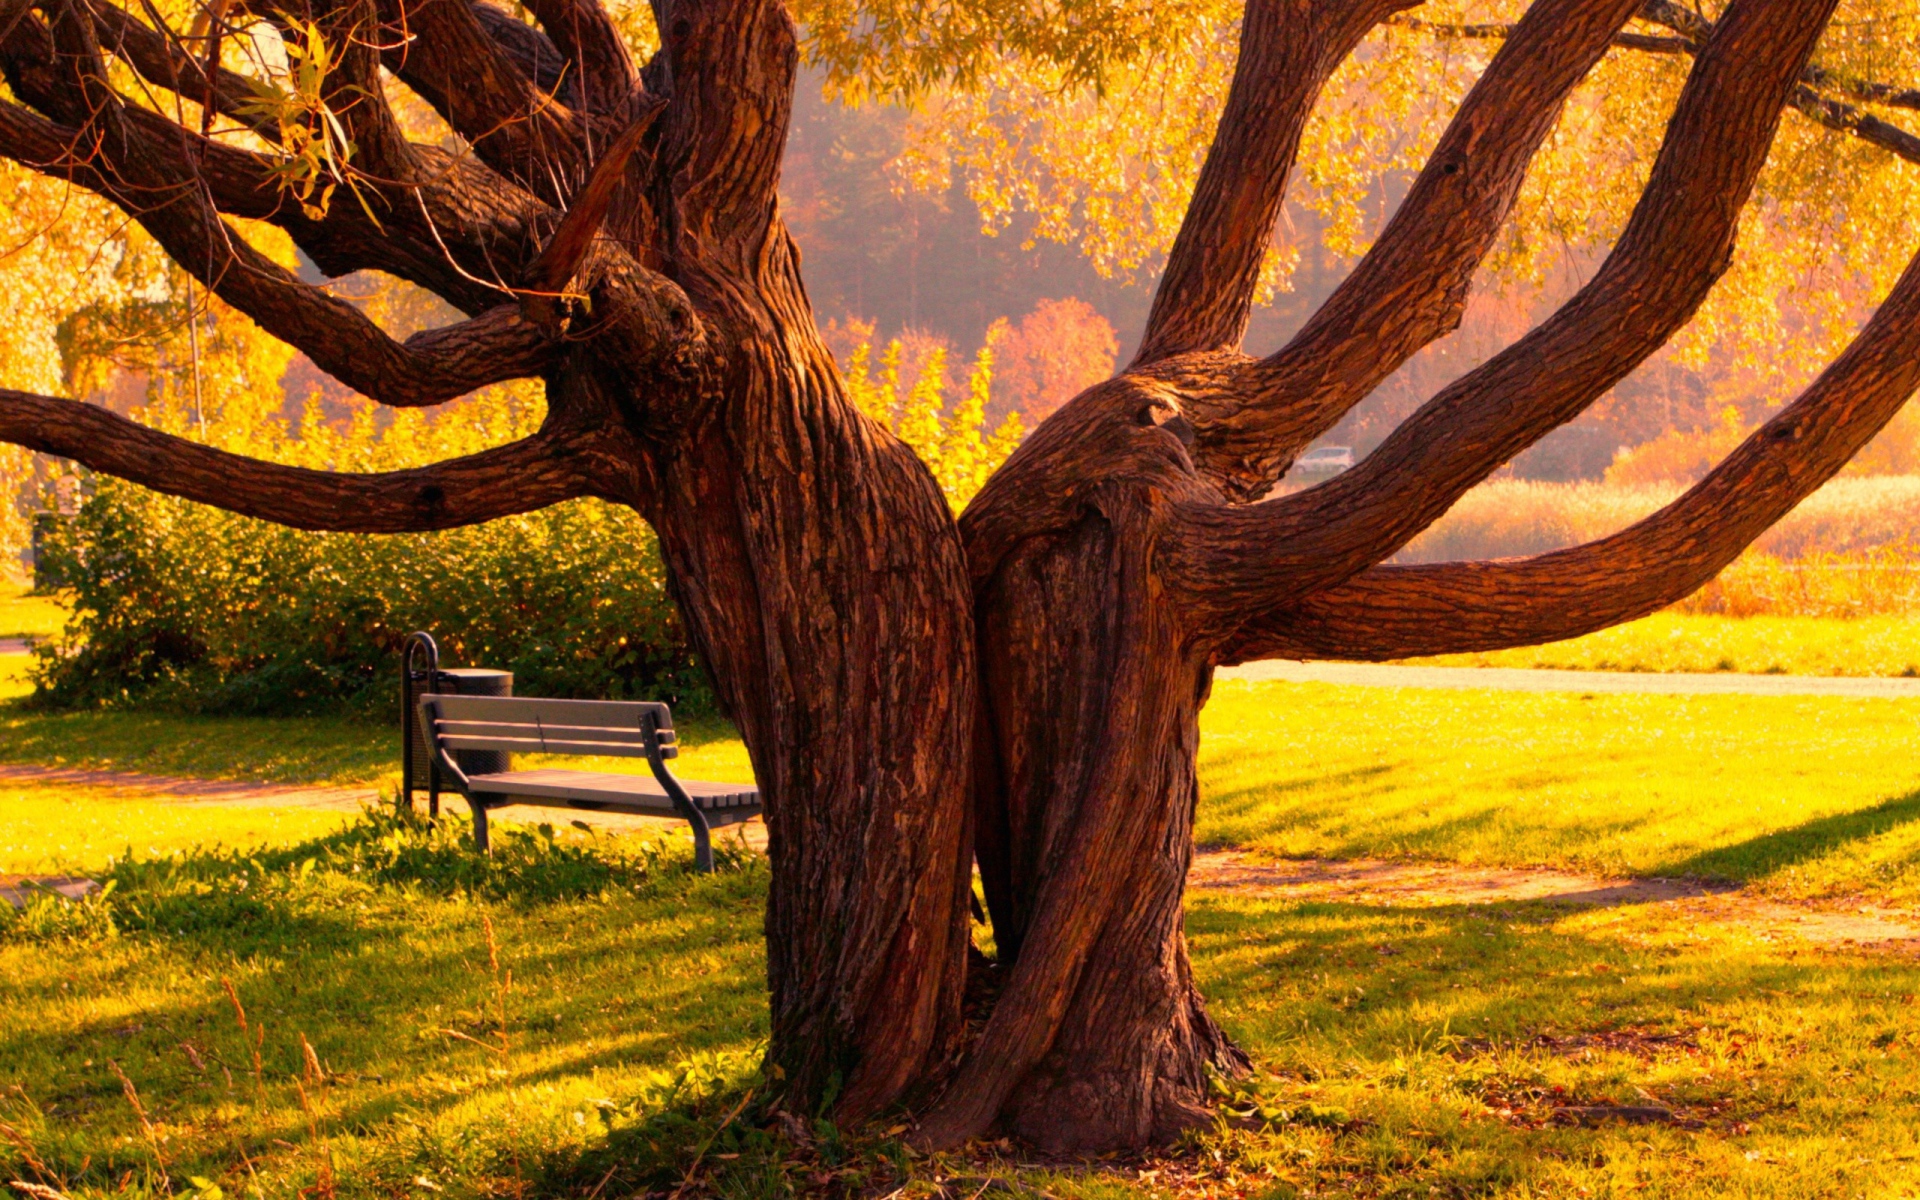 Скамейка под деревом